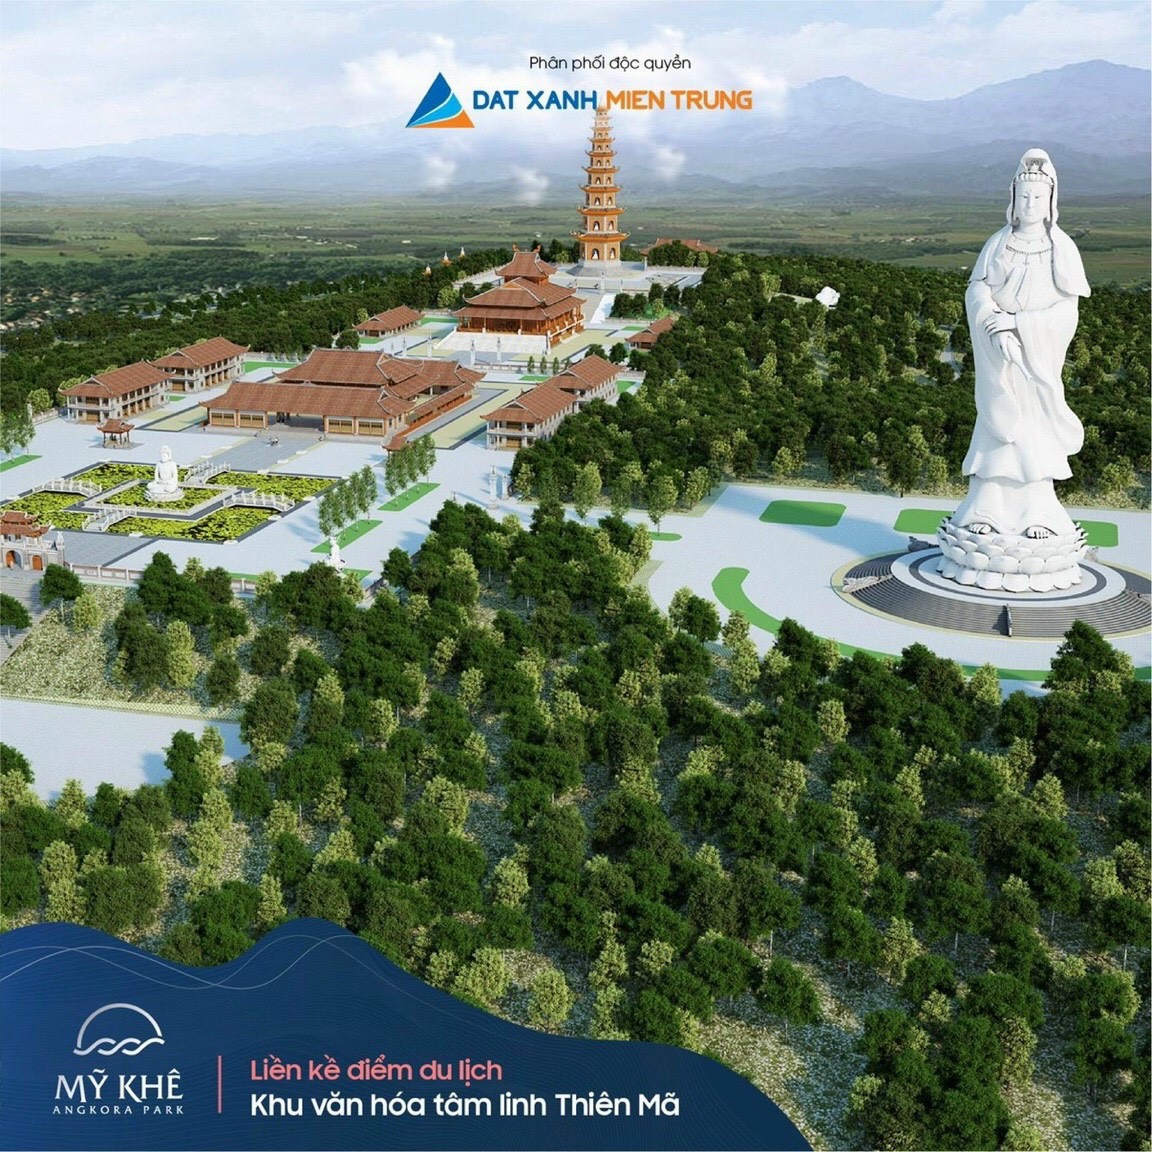 5 suất nội bộ đẹp nhất Mỹ Khê Angkora Park Quảng Ngãi, TT 50%, CK 20%, Giá cực kì đầu tư 16tr/m2 LH 0777102394 9